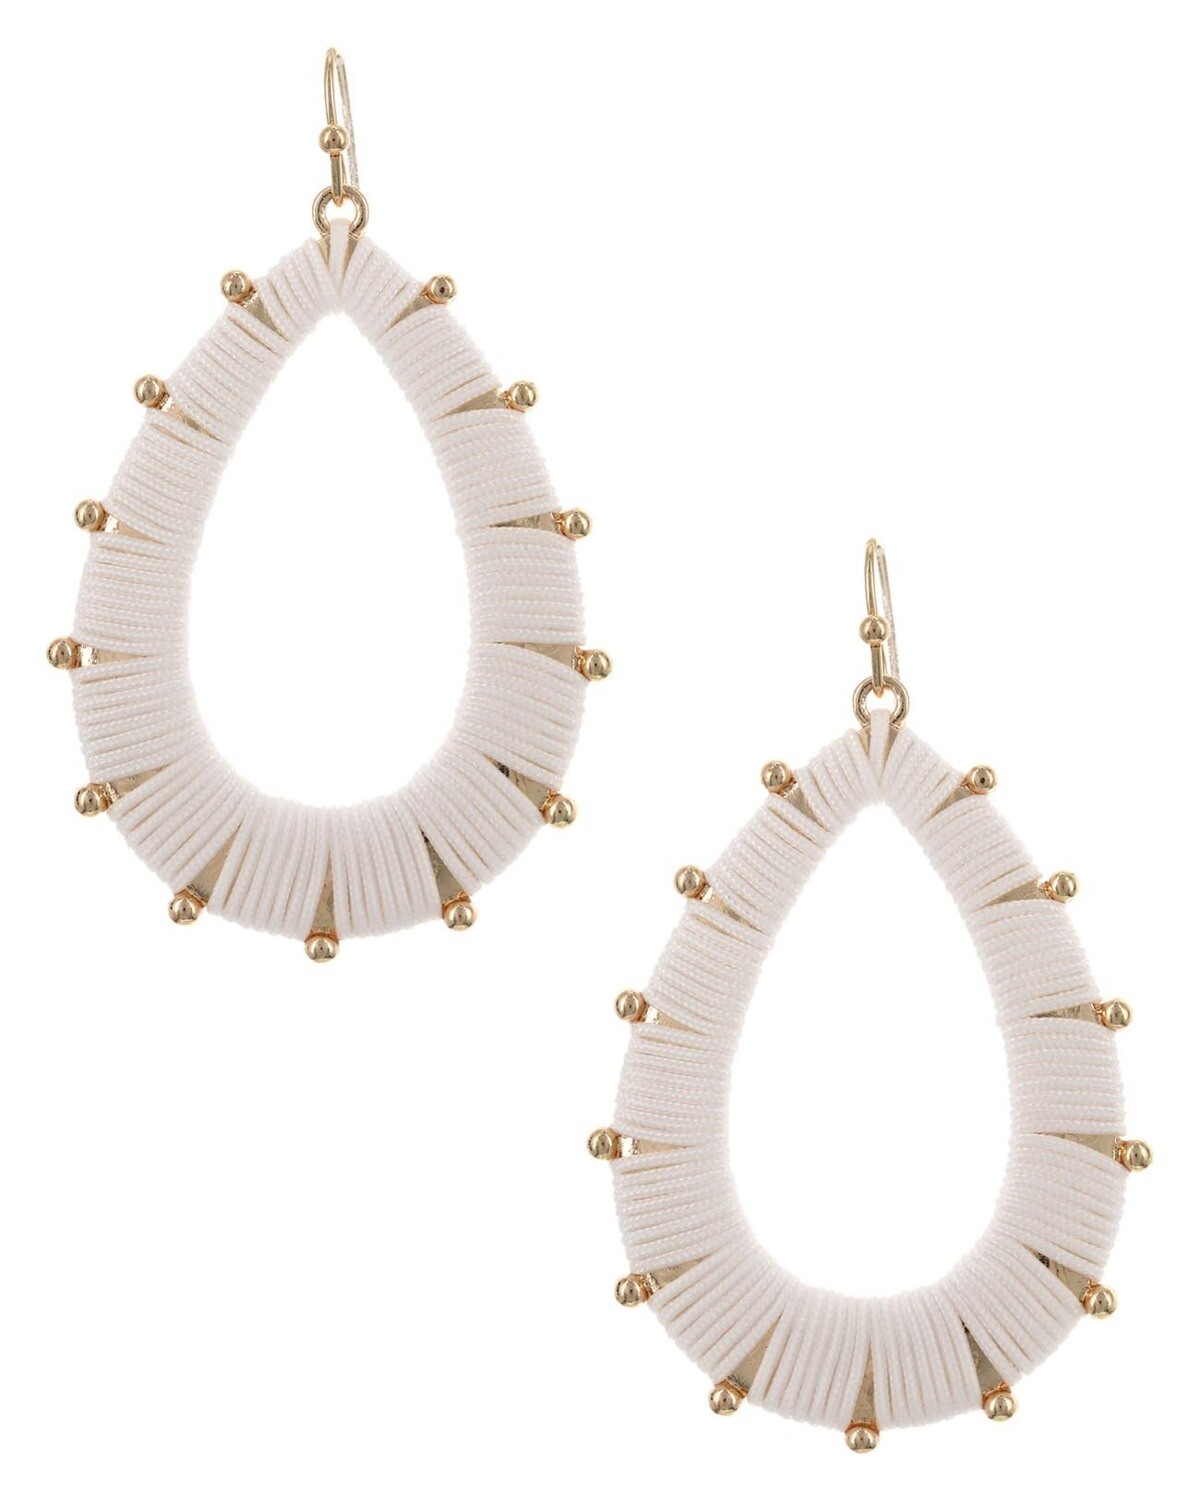 White & Gold Threaded Oval Hoop Earrings